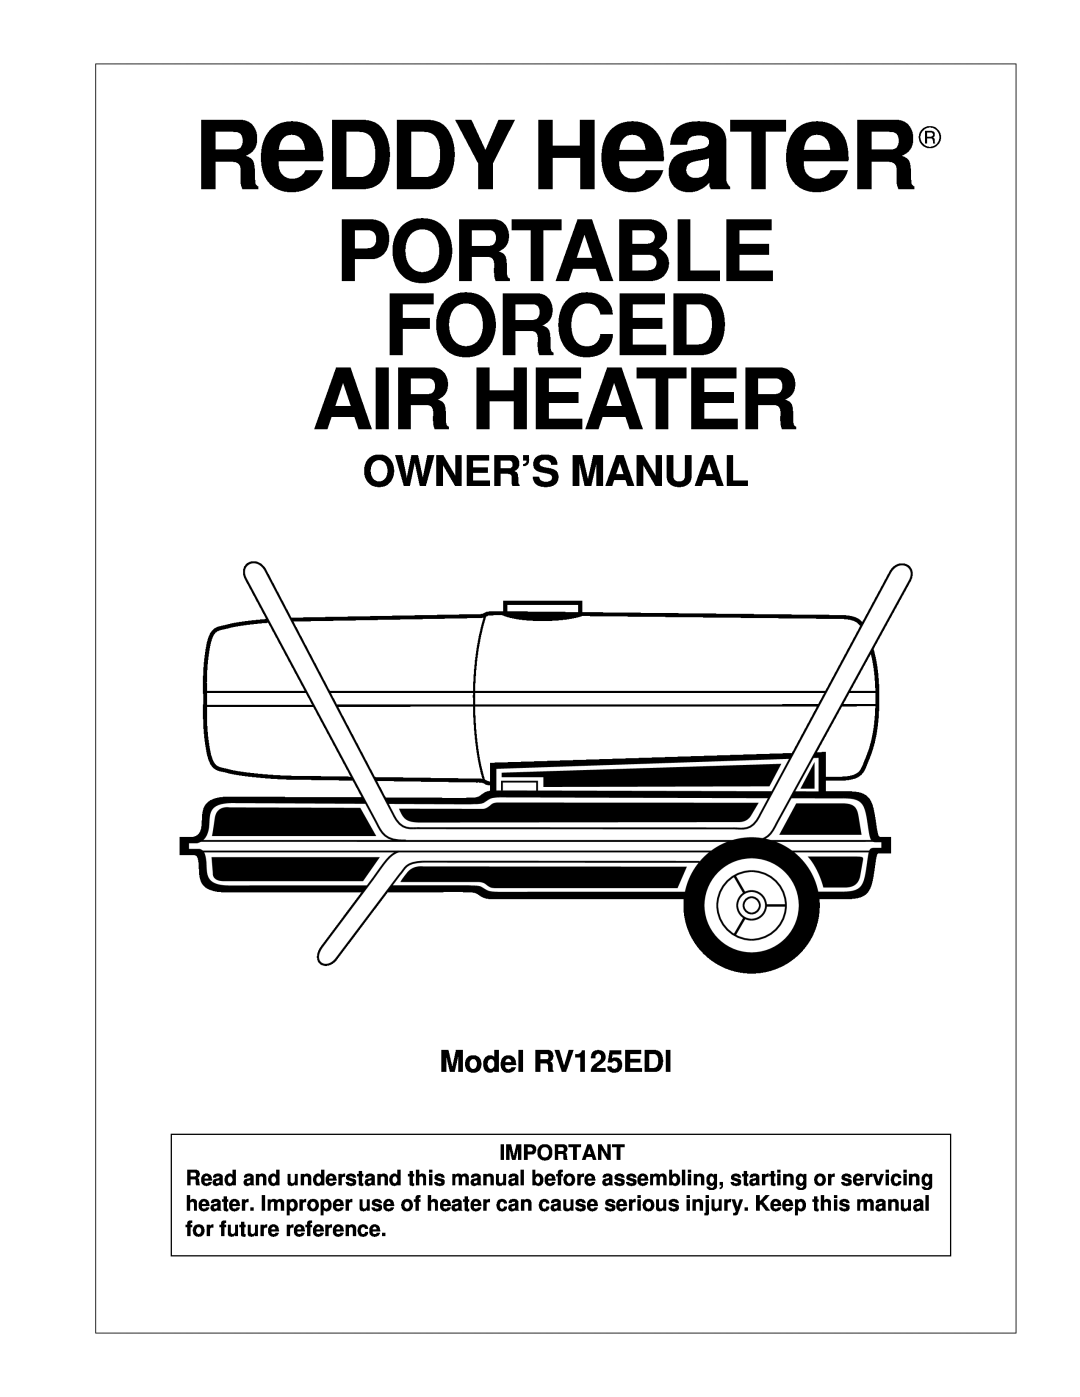 Desa owner manual Model RV125EDI, ReDDY HeaTeR, Portable Forced Air Heater, Side, Pfa/Pv 